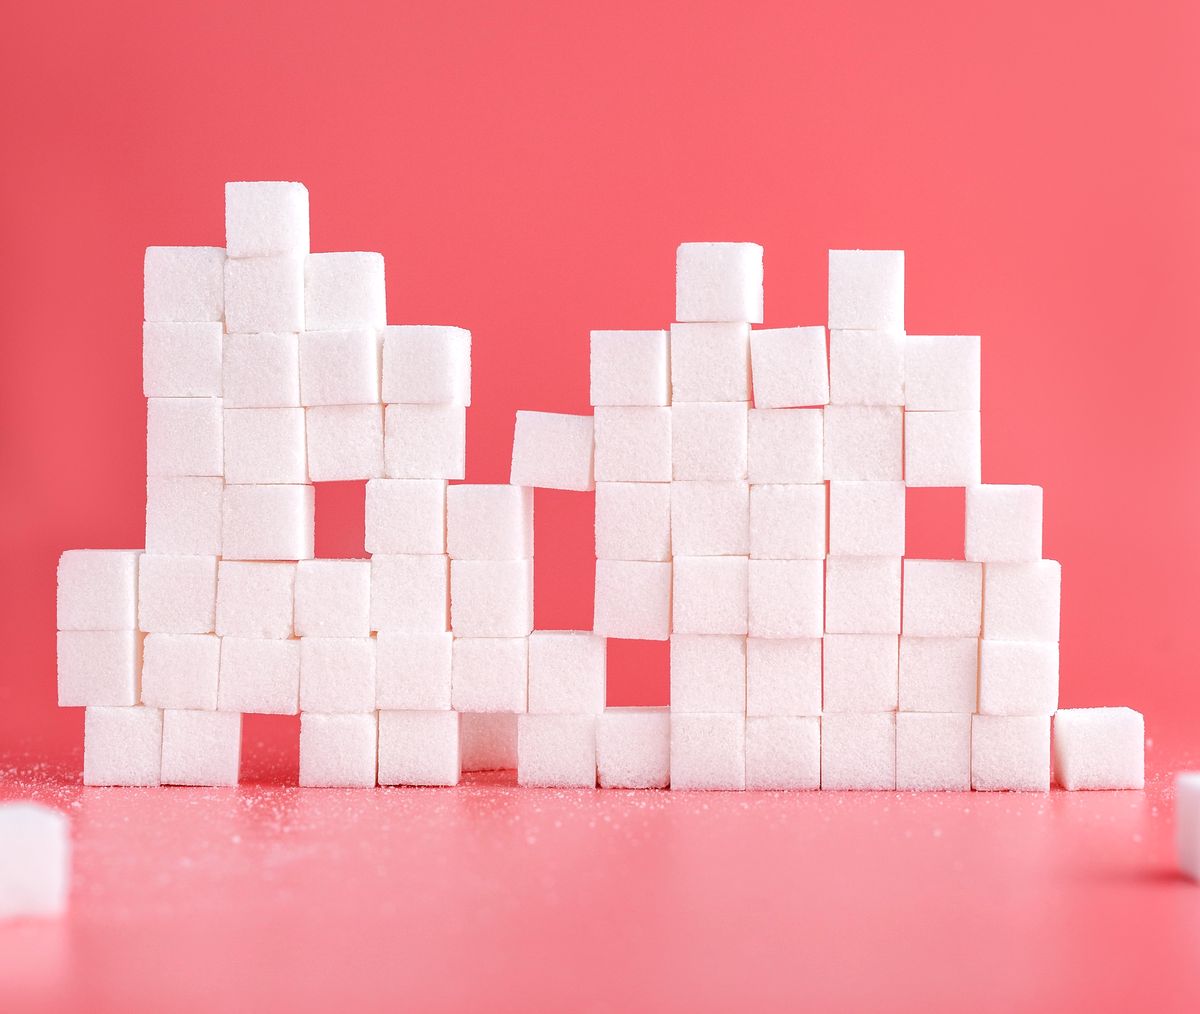 Употреблять ли сахар? Вопрос десятилетий